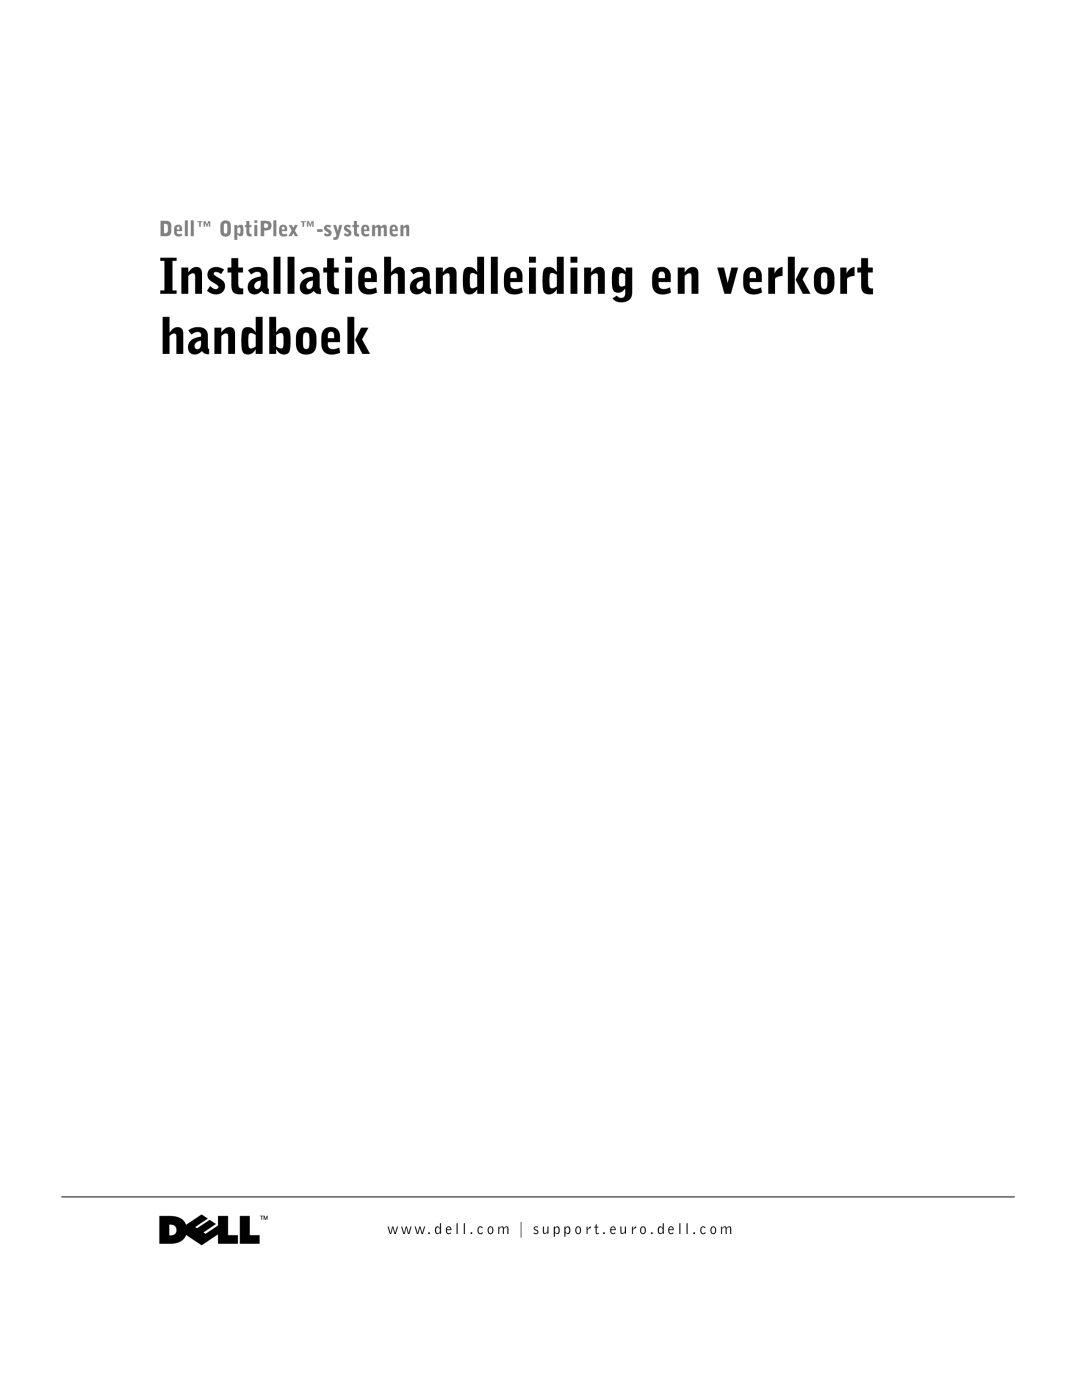 Dell GX60 manual Installatiehandleiding en verkort handboek 